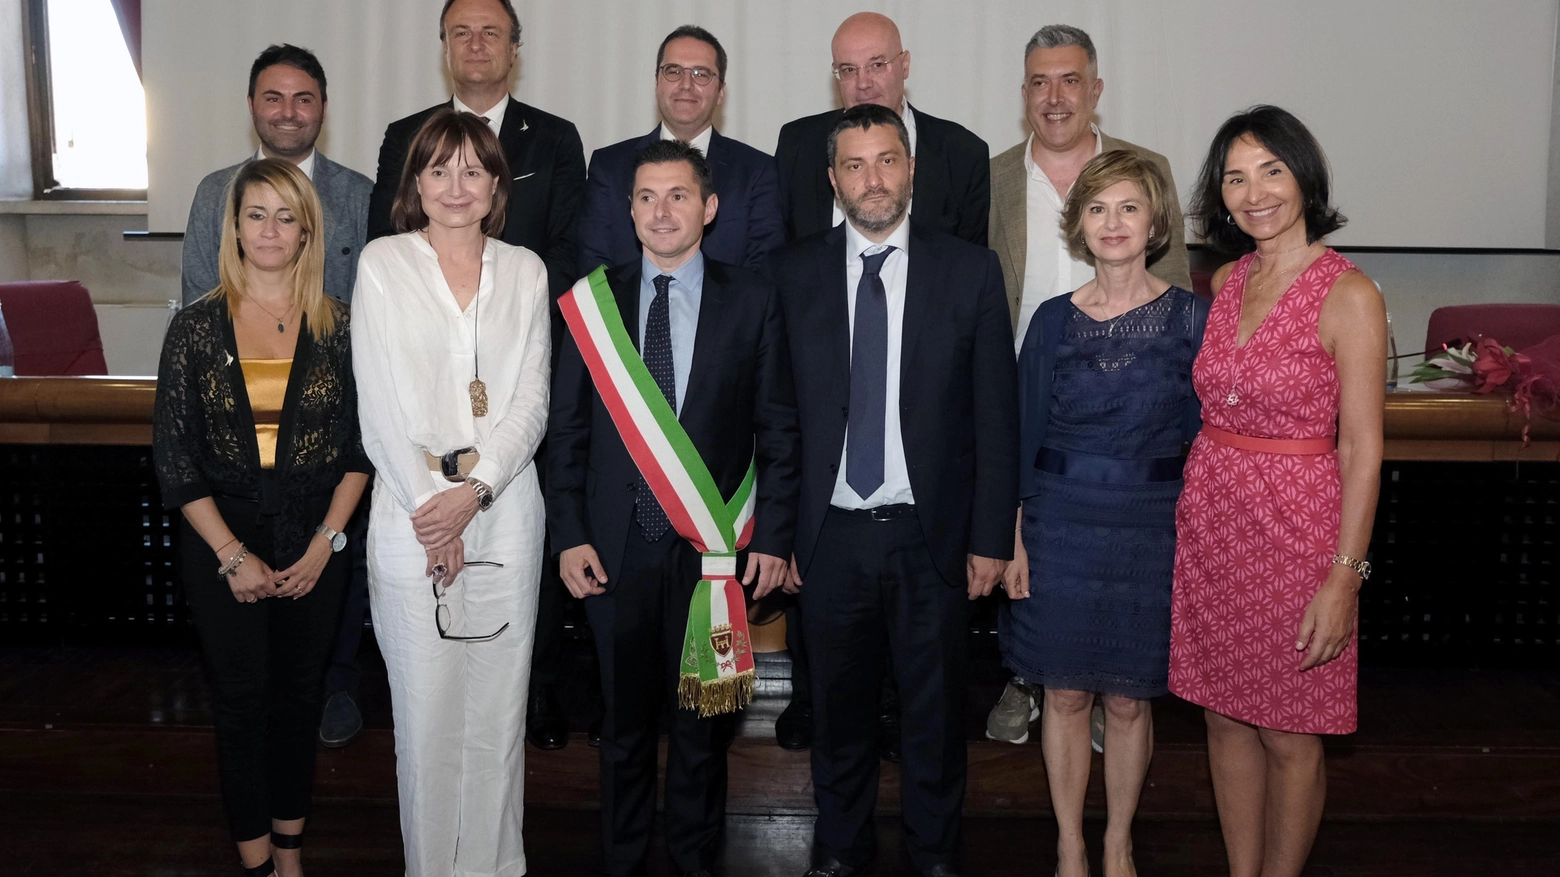 Il sindaco Fioravanti: "Saremo trasparenti": E l'ex primo cittadino Castelli lascia Forza Italia